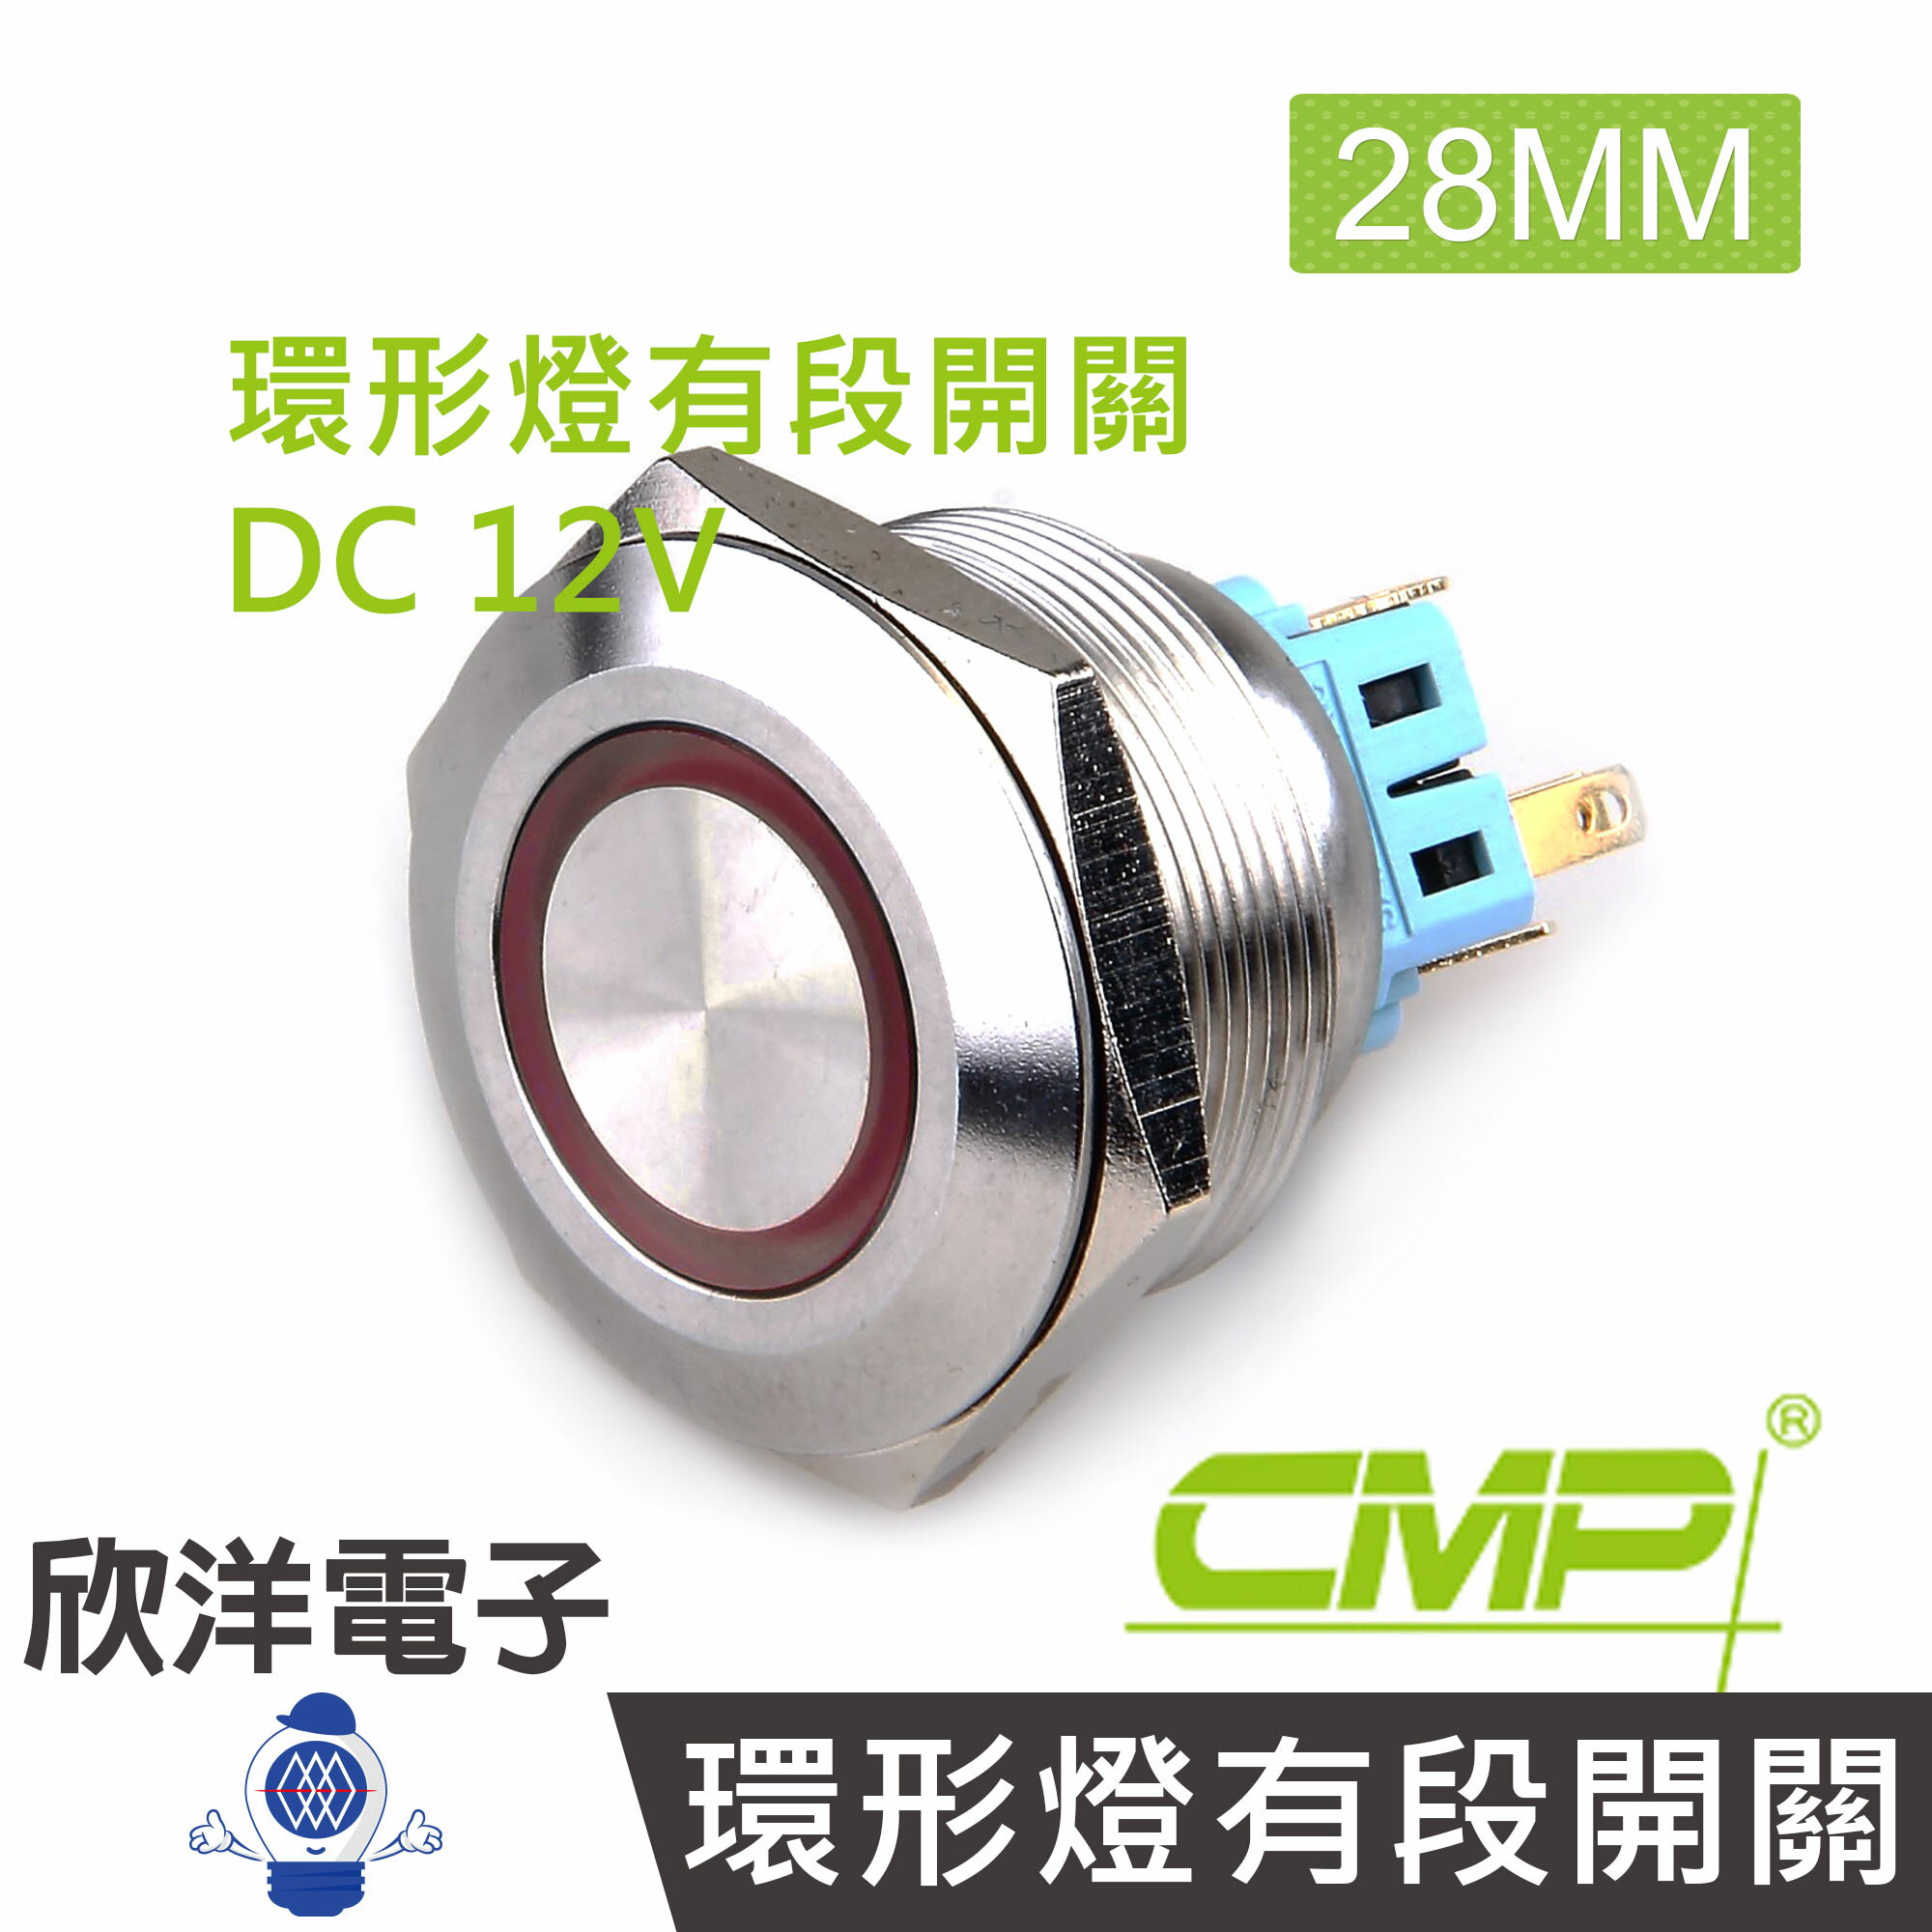 ※ 欣洋電子 ※ 28mm不鏽鋼金屬平面環形燈有段開關DC12V / S2801B-12V 藍、綠、紅、白、橙 五色光自由選購/ CMP西普